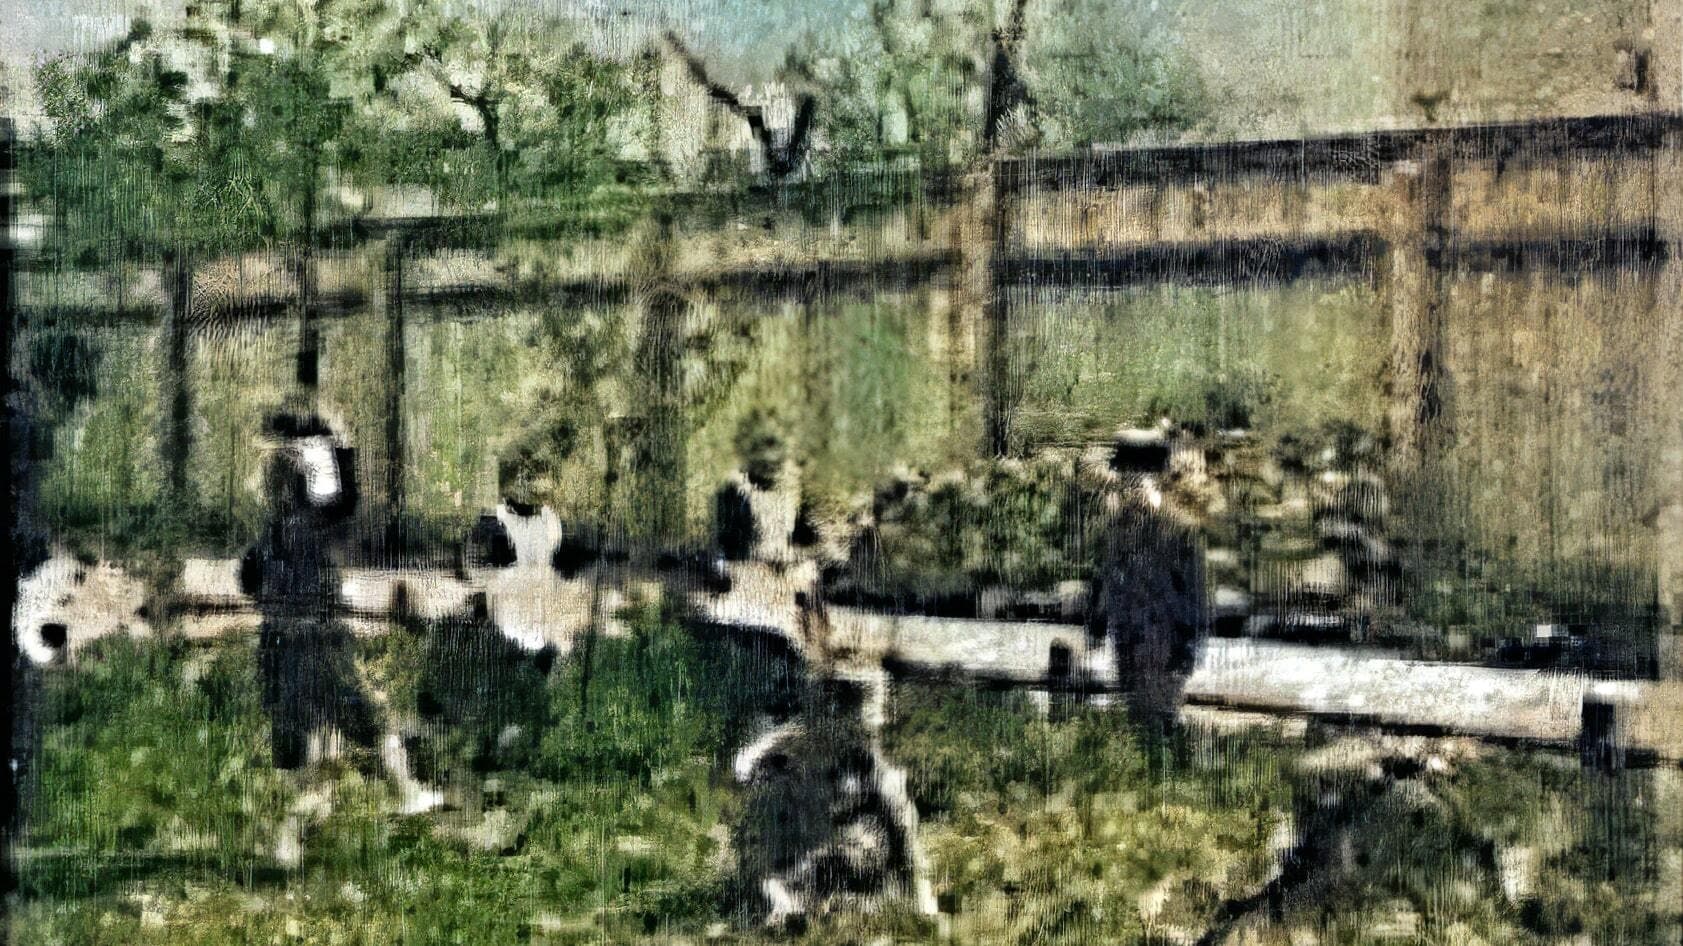 Dzieci bawiące się w ogrodzie (1894)